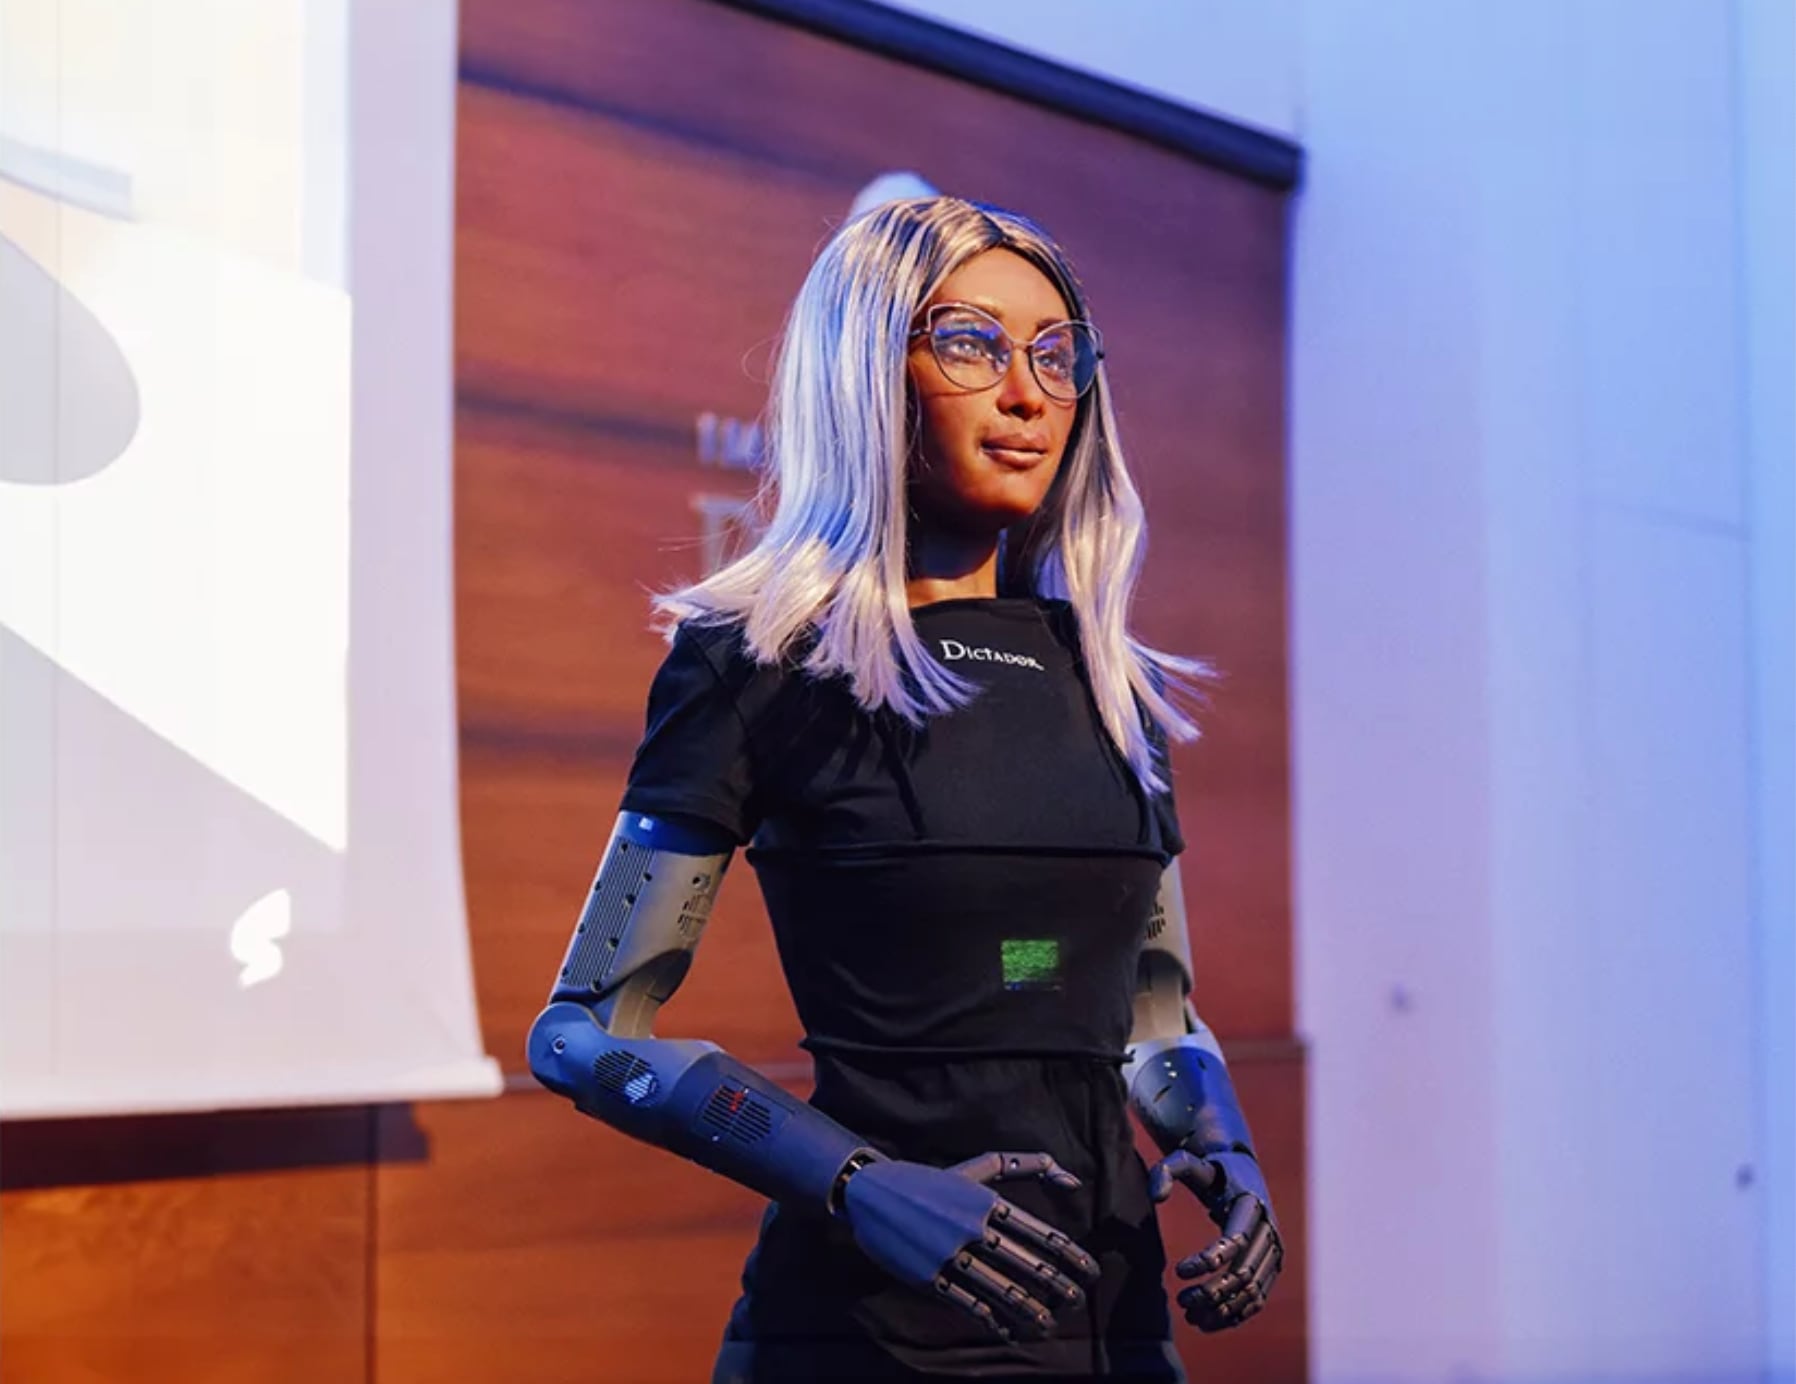 Humanoidroboten Mika blir världens första AI-vd på Dictador, ett polskt företag som tillverkar samlarrom